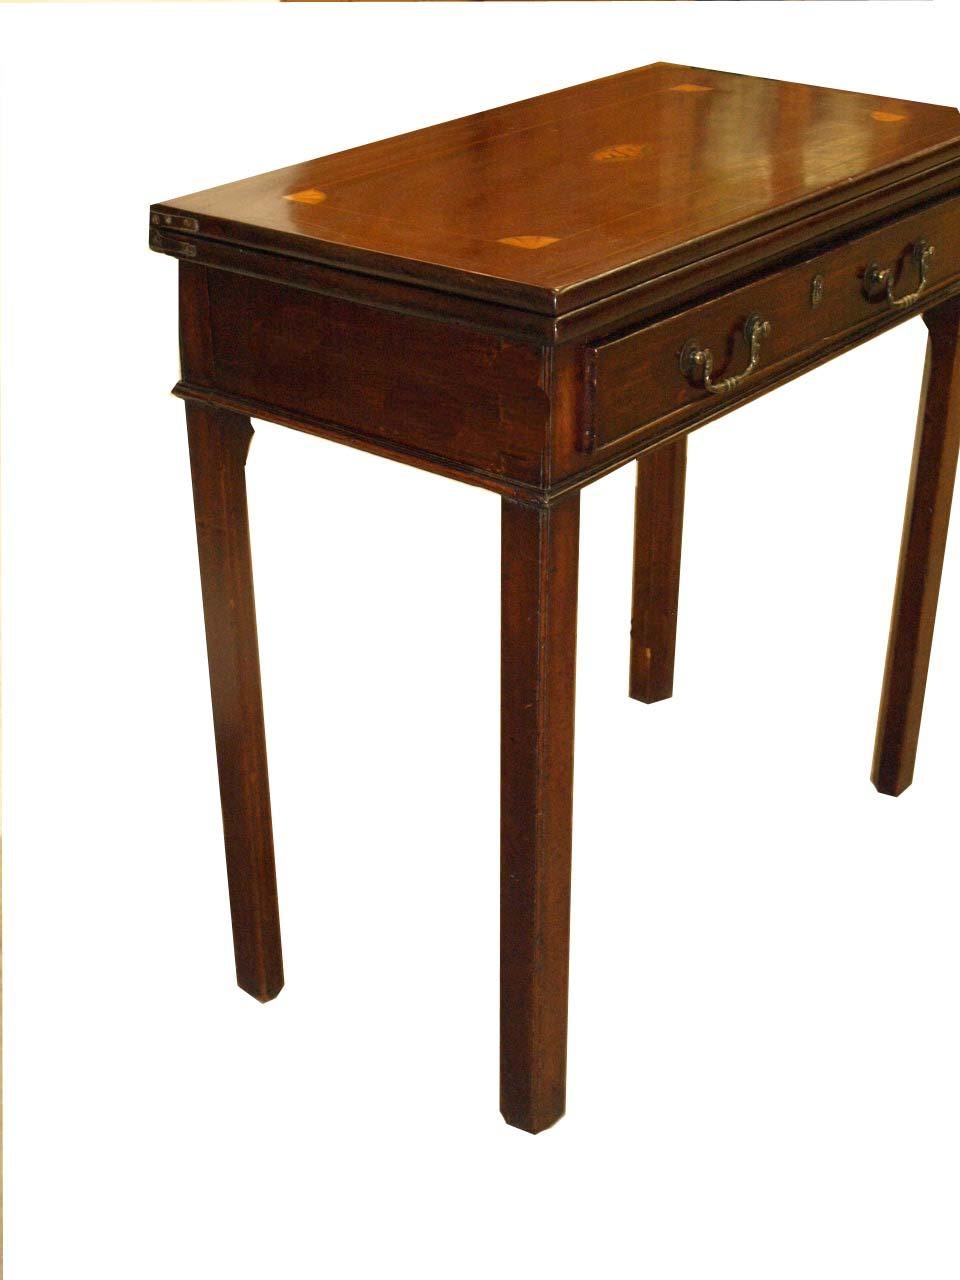 Englischer Spieltisch mit Intarsien aus der Zeit von George III. Die Platte mit schöner Patina hat ein zentrales Medaillon mit Muschelintarsien, das von konvexen Eckfächern umgeben ist, die mit Buchsbaumintarsien verbunden sind. Die aufklappbare